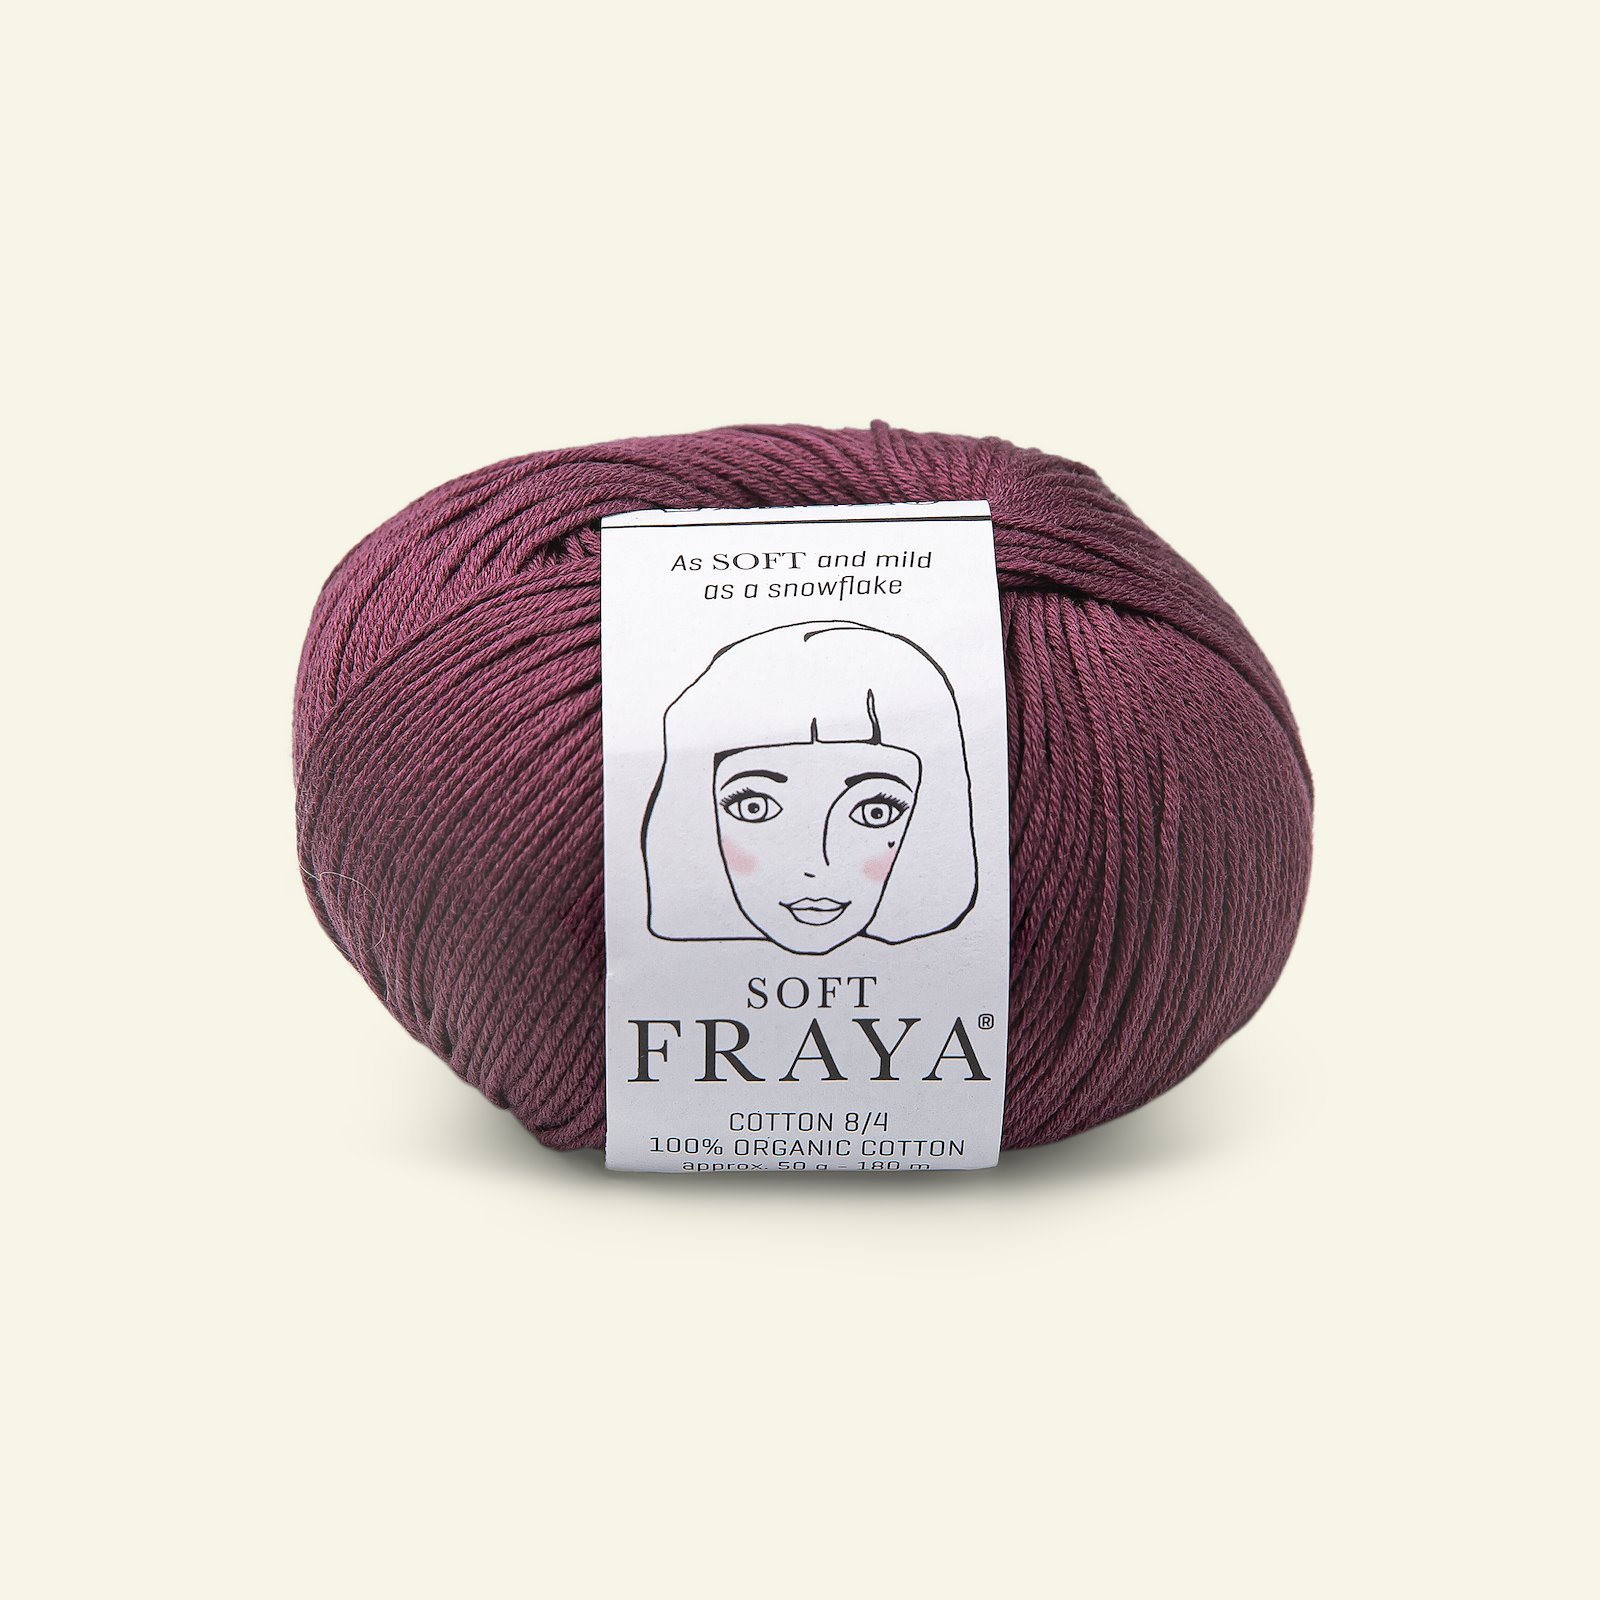 FRAYA, 100% organic cotton yarn "Soft", dusty aubergine 90063554_pack